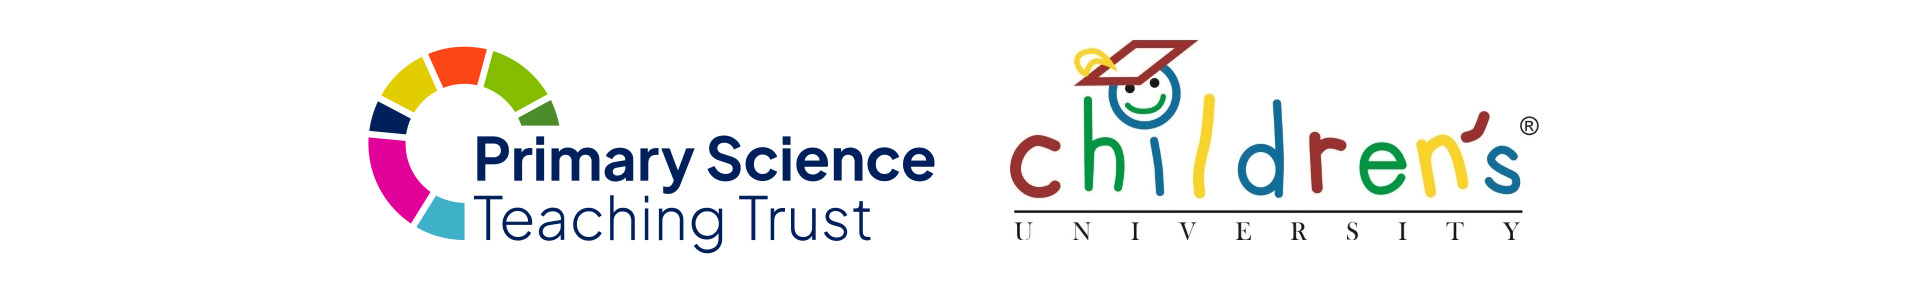 PSTT & Children's University Logos